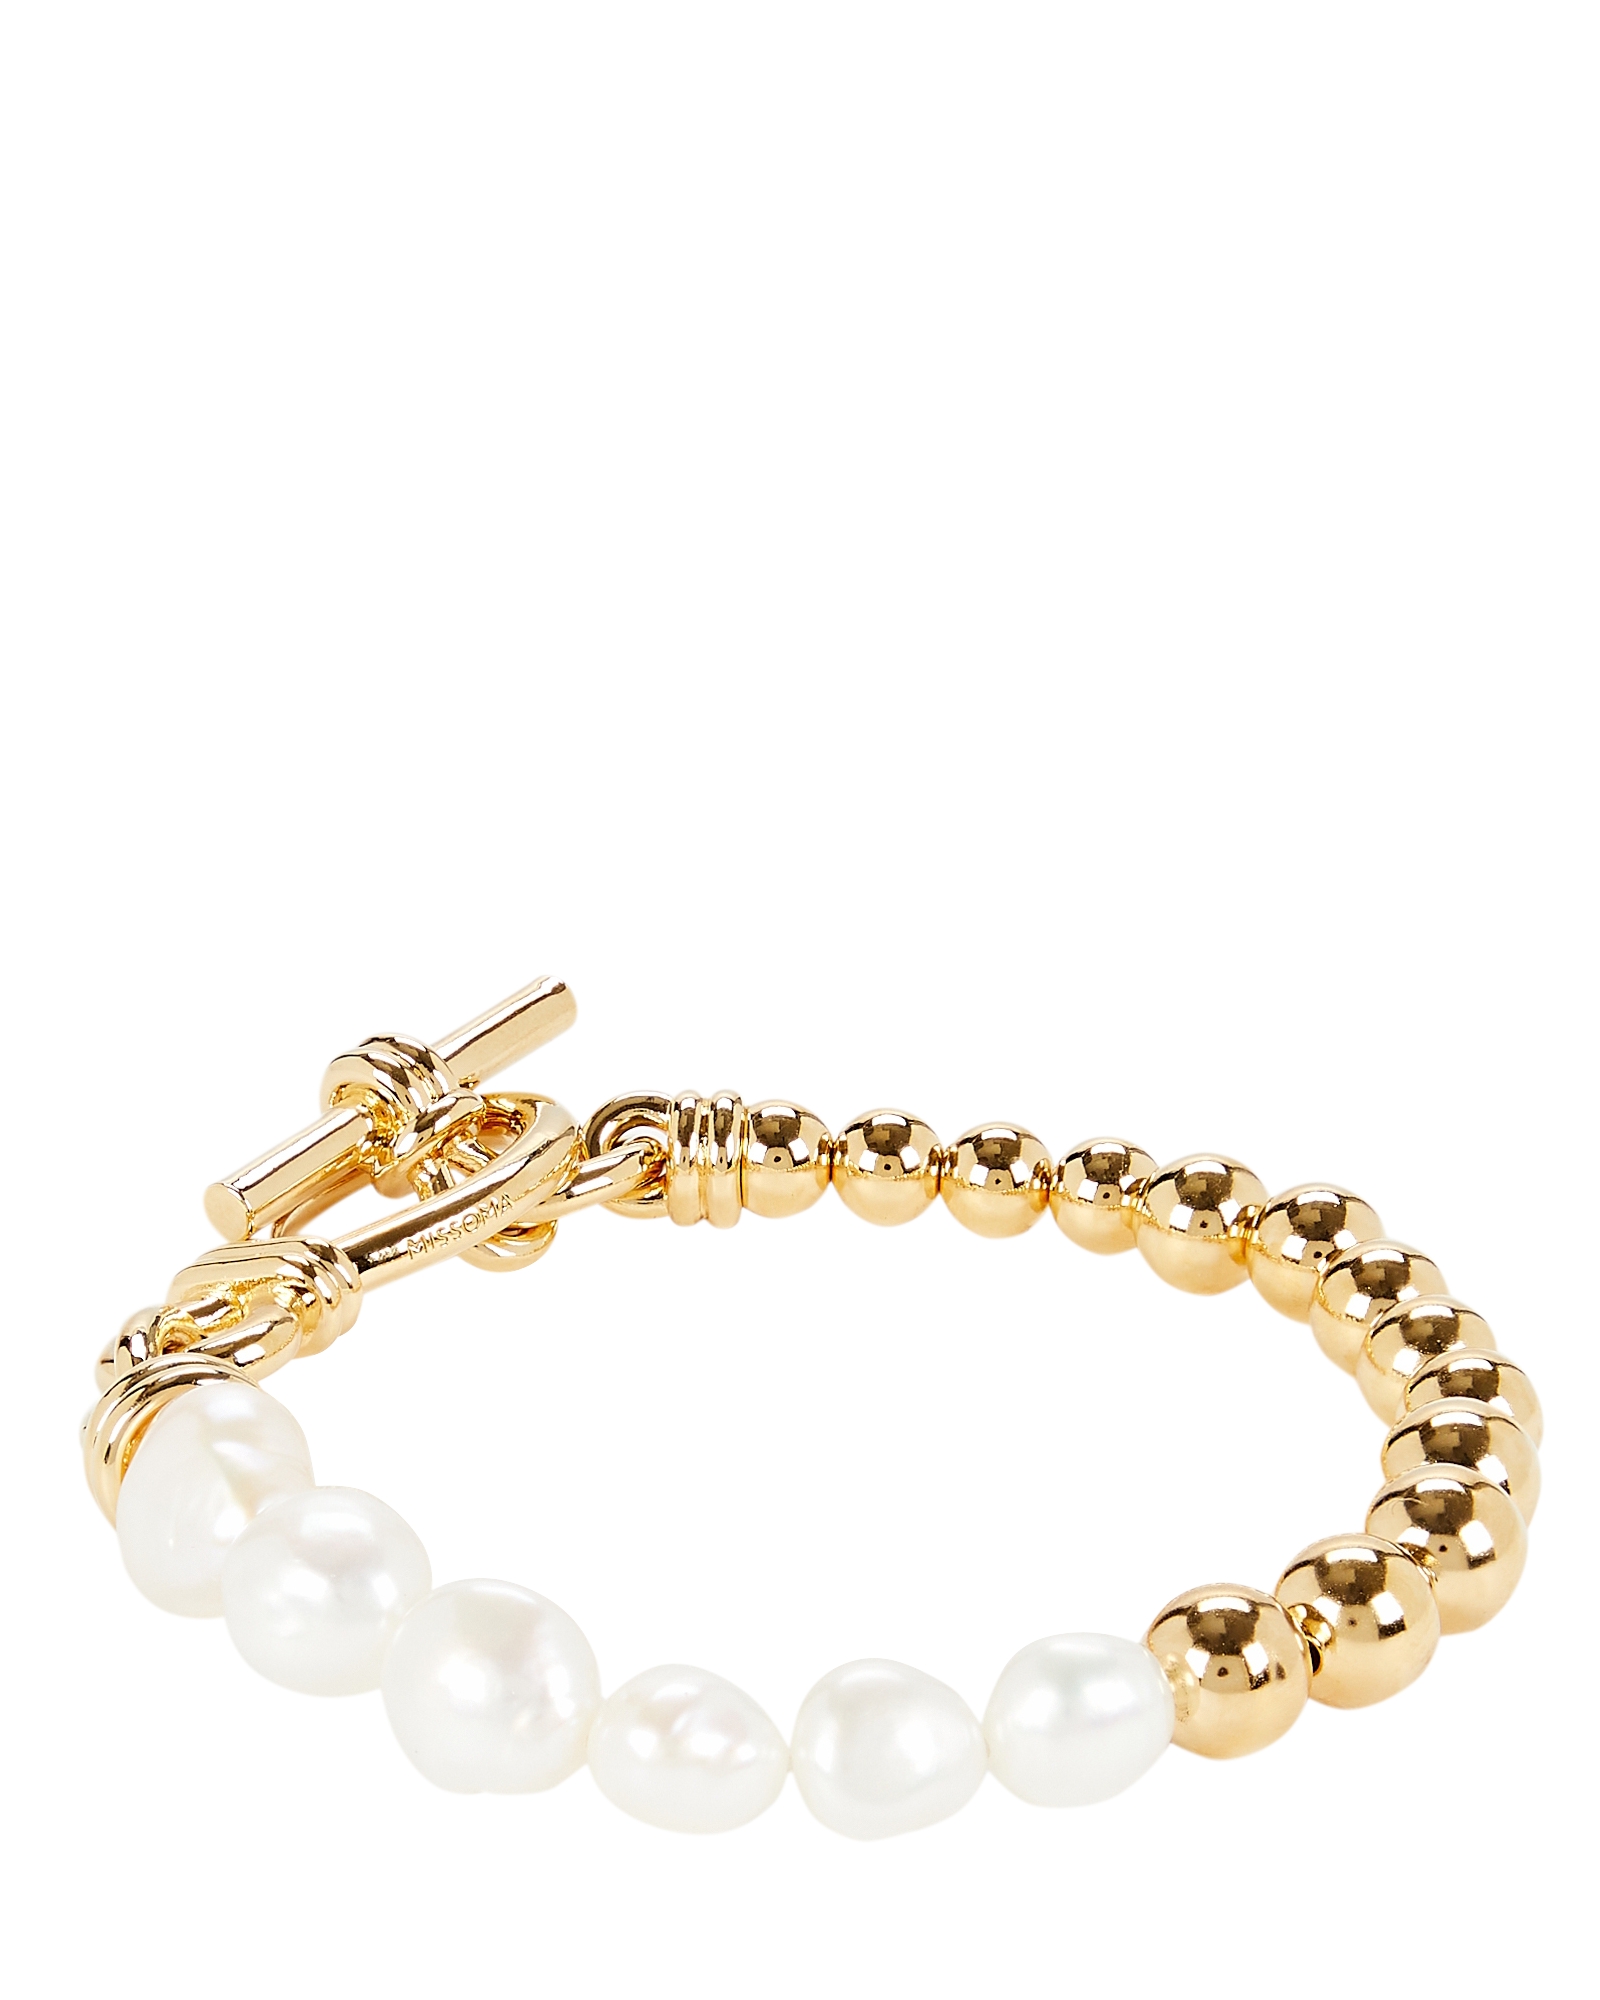 Bracelet link bracelet gold with baroque pearl and sliding closure